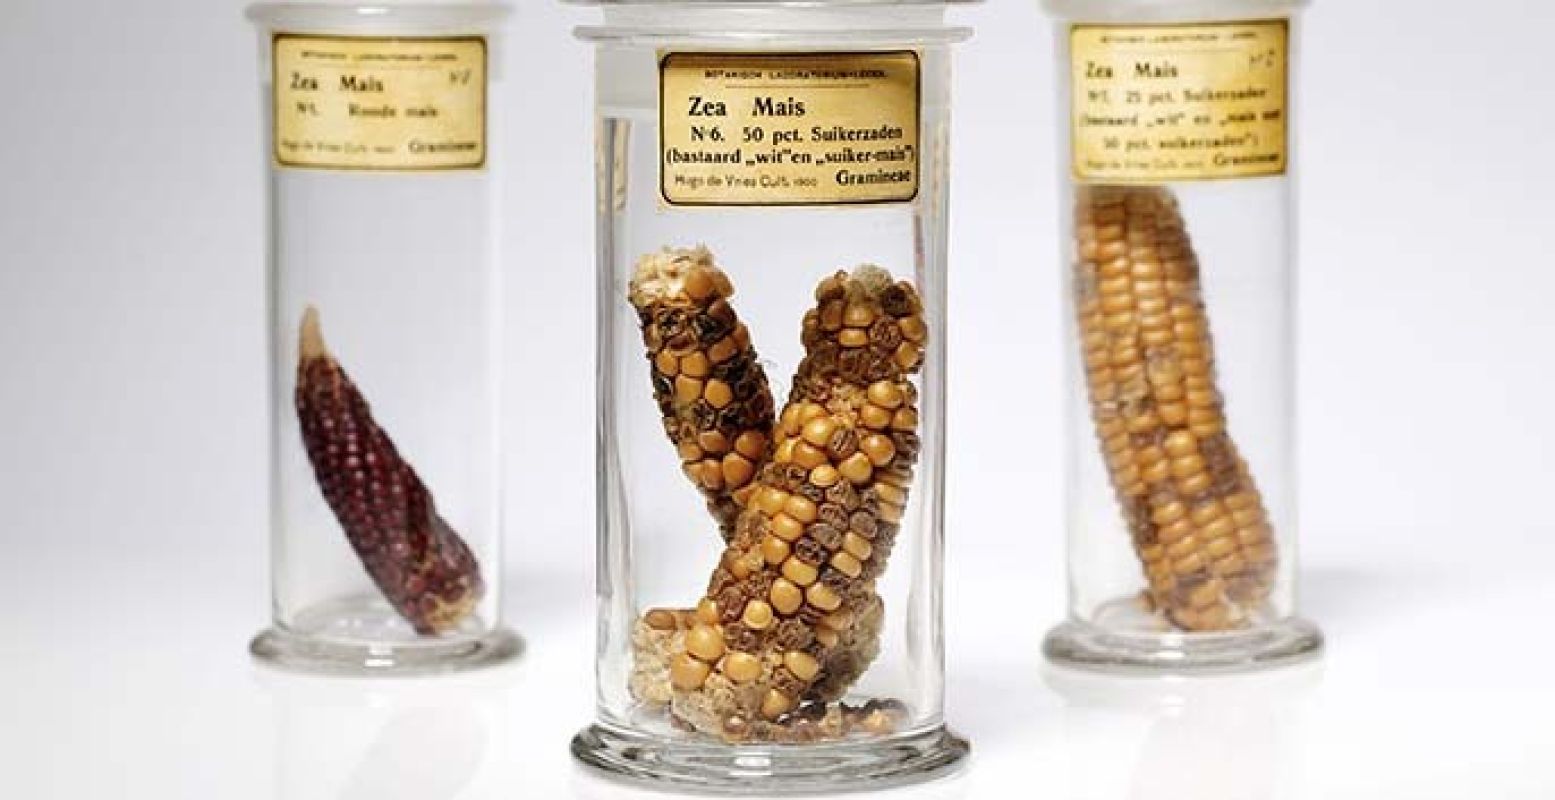 Maiskolven gekweekt door plantkundige Hugo de Vries om de wetten van Mendel over erfelijkheid te illustreren, 1900. (Museum Boerhaave, V10381, V10380, V10382). Foto: Marieke de Lorijn